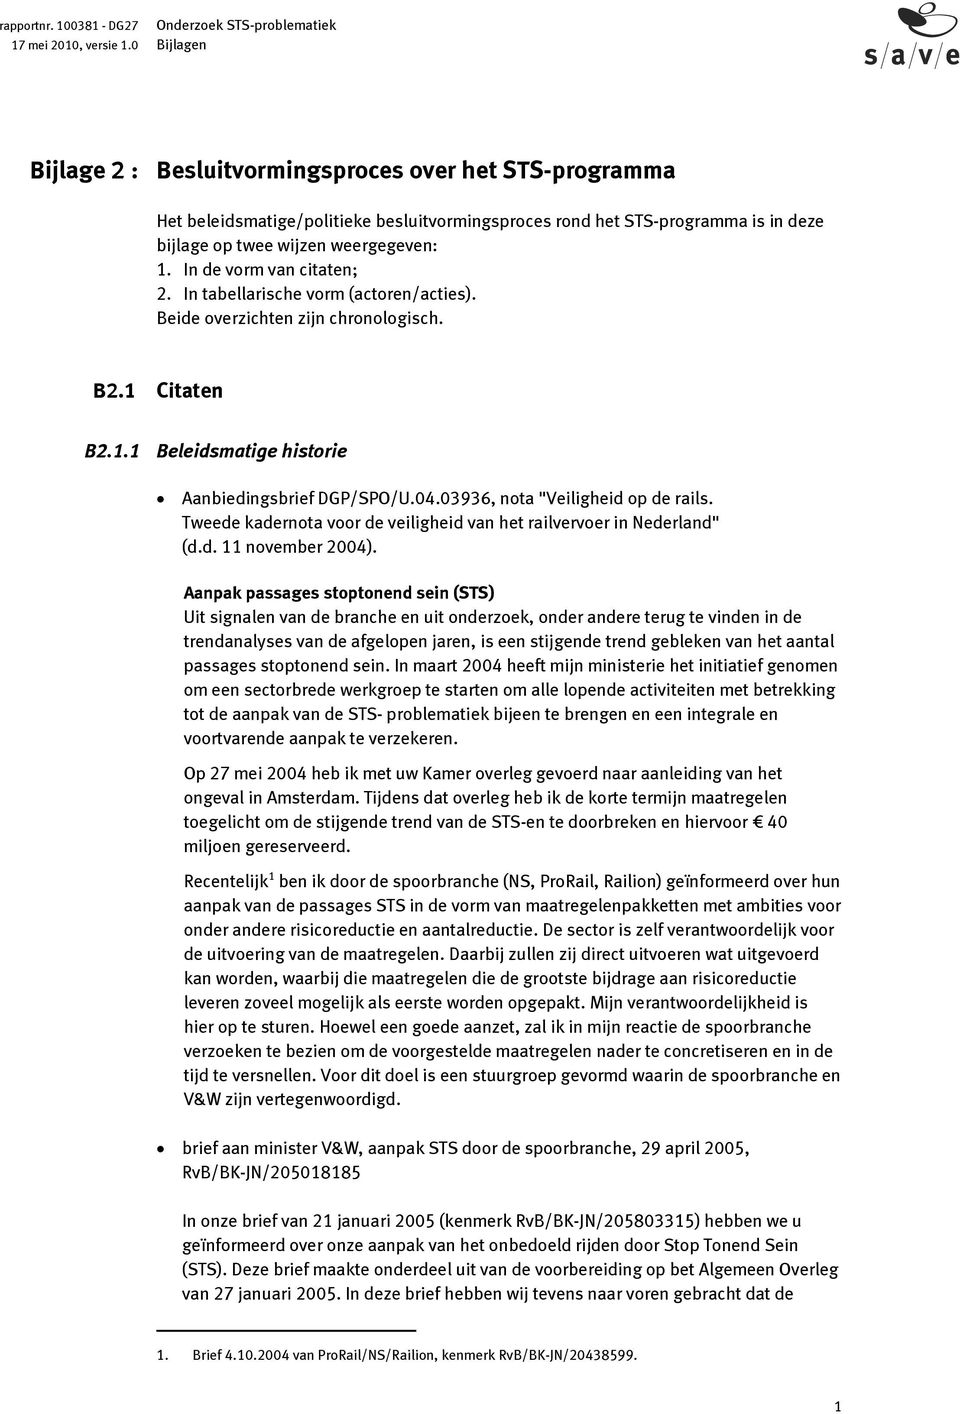 03936, nota "Veiligheid op de rails. Tweede kadernota voor de veiligheid van het railvervoer in Nederland" (d.d. 11 november 2004).